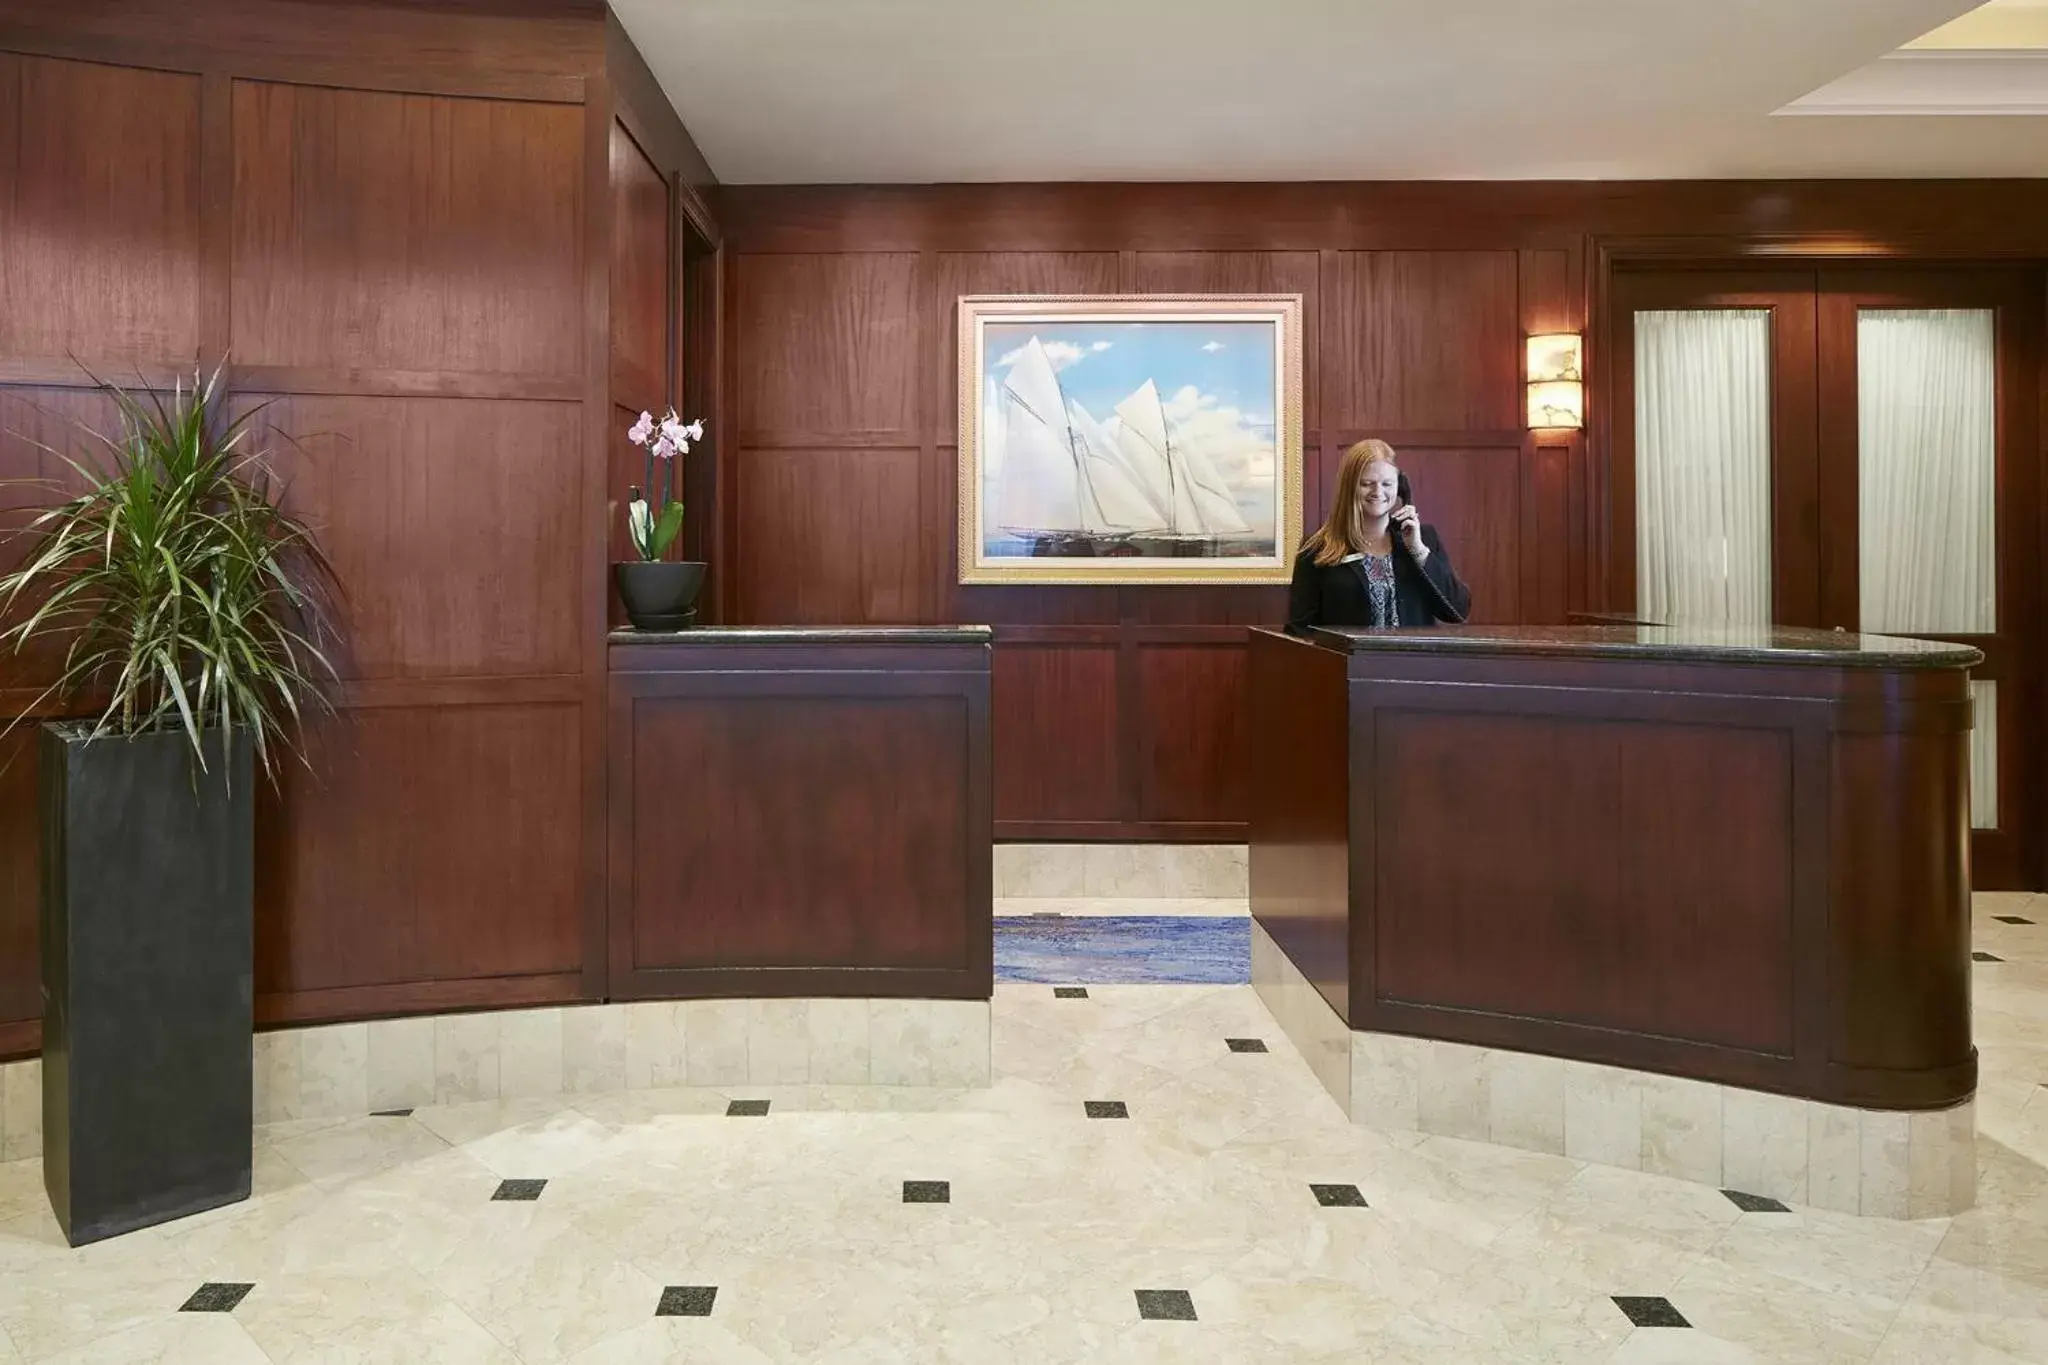 Lobby or reception, Lobby/Reception in Club Quarters Hotel Faneuil Hall, Boston